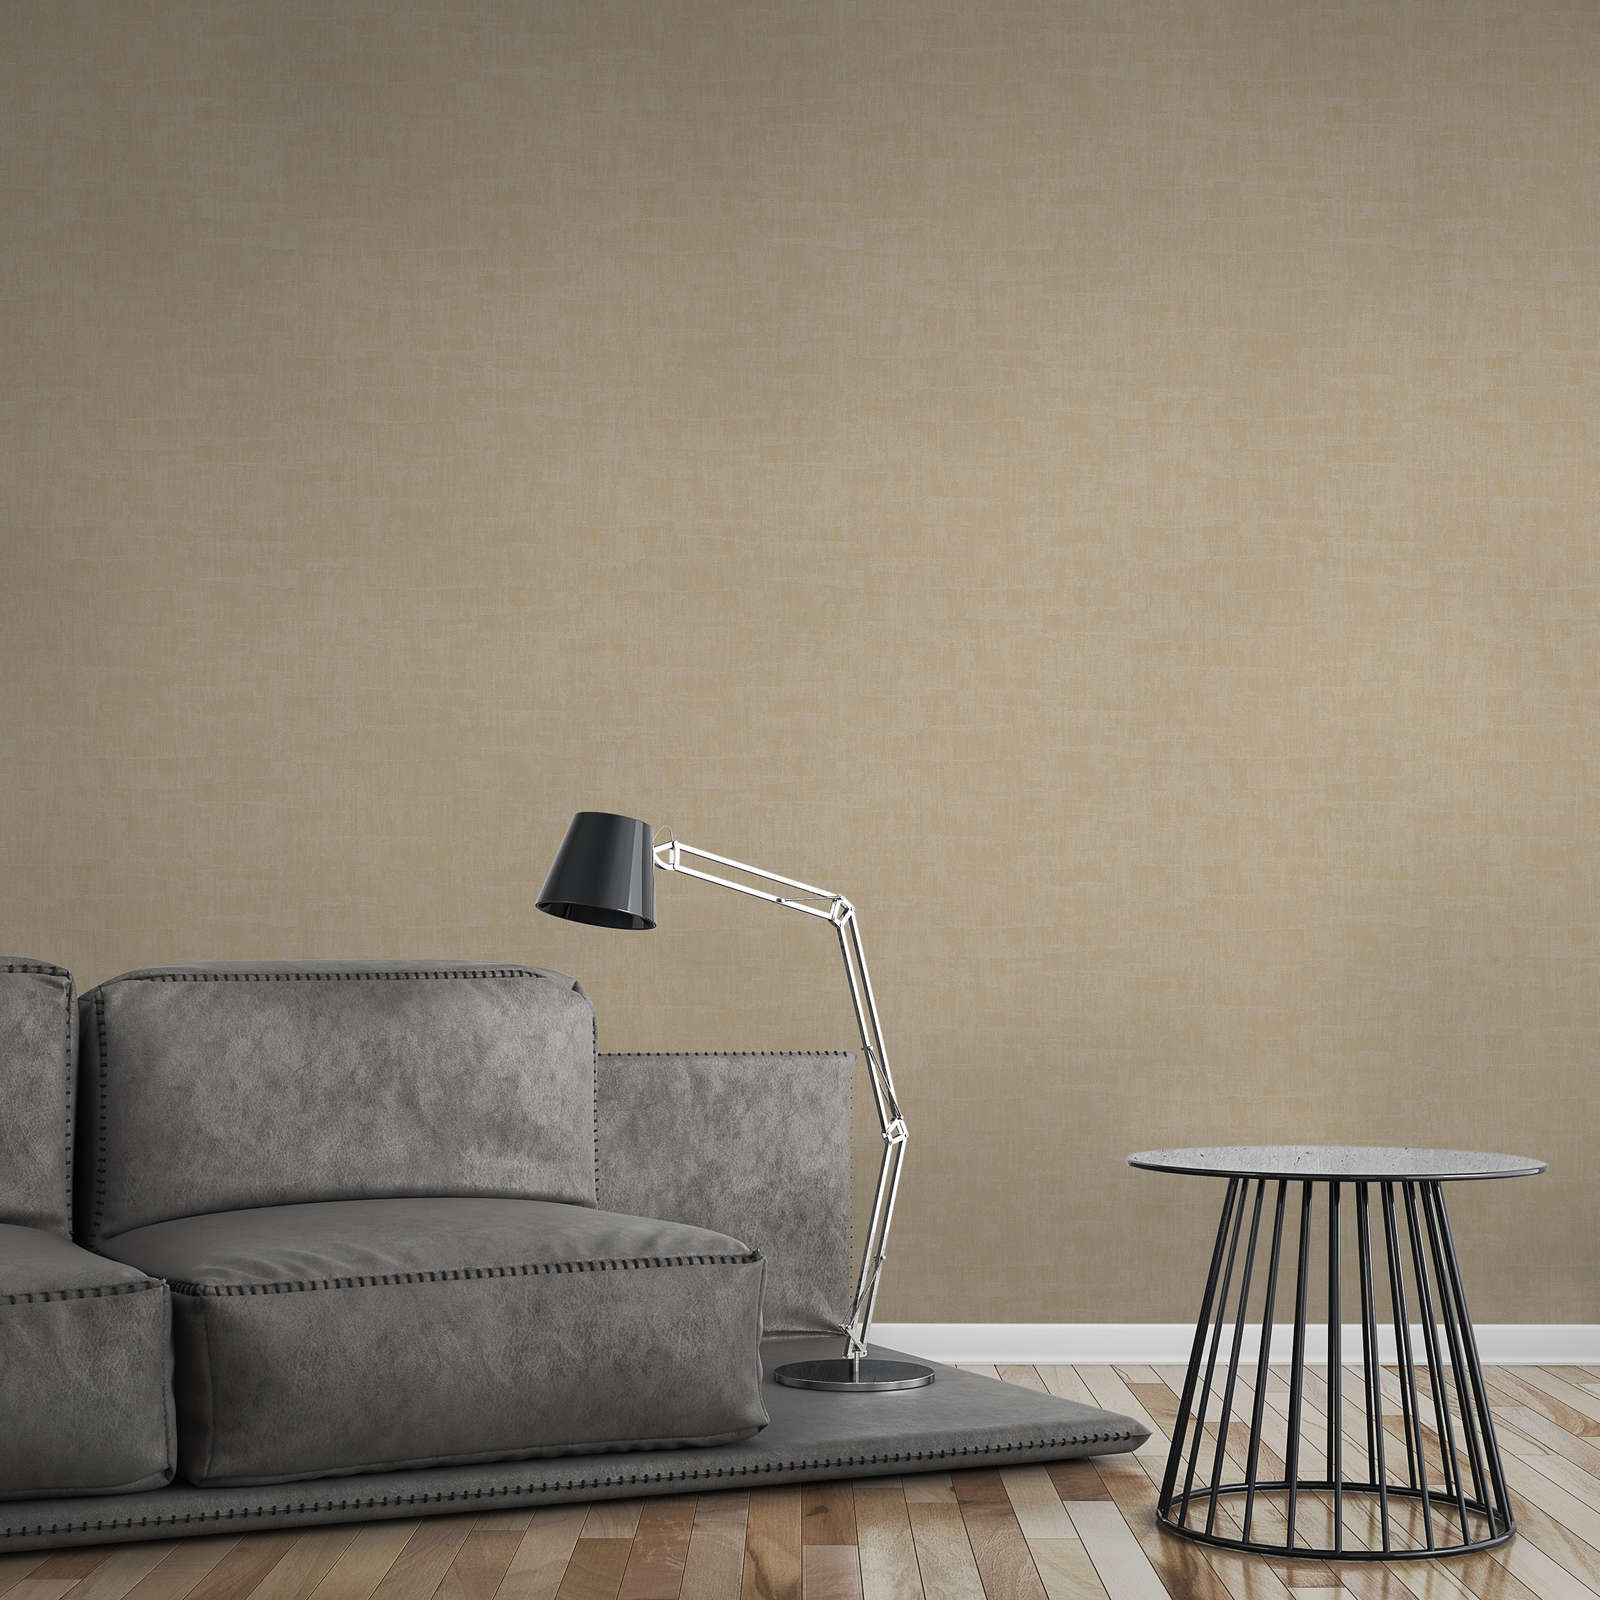             Onderlaag behang met abstract raffia patroon in zachte kleuren - beige, taupe
        